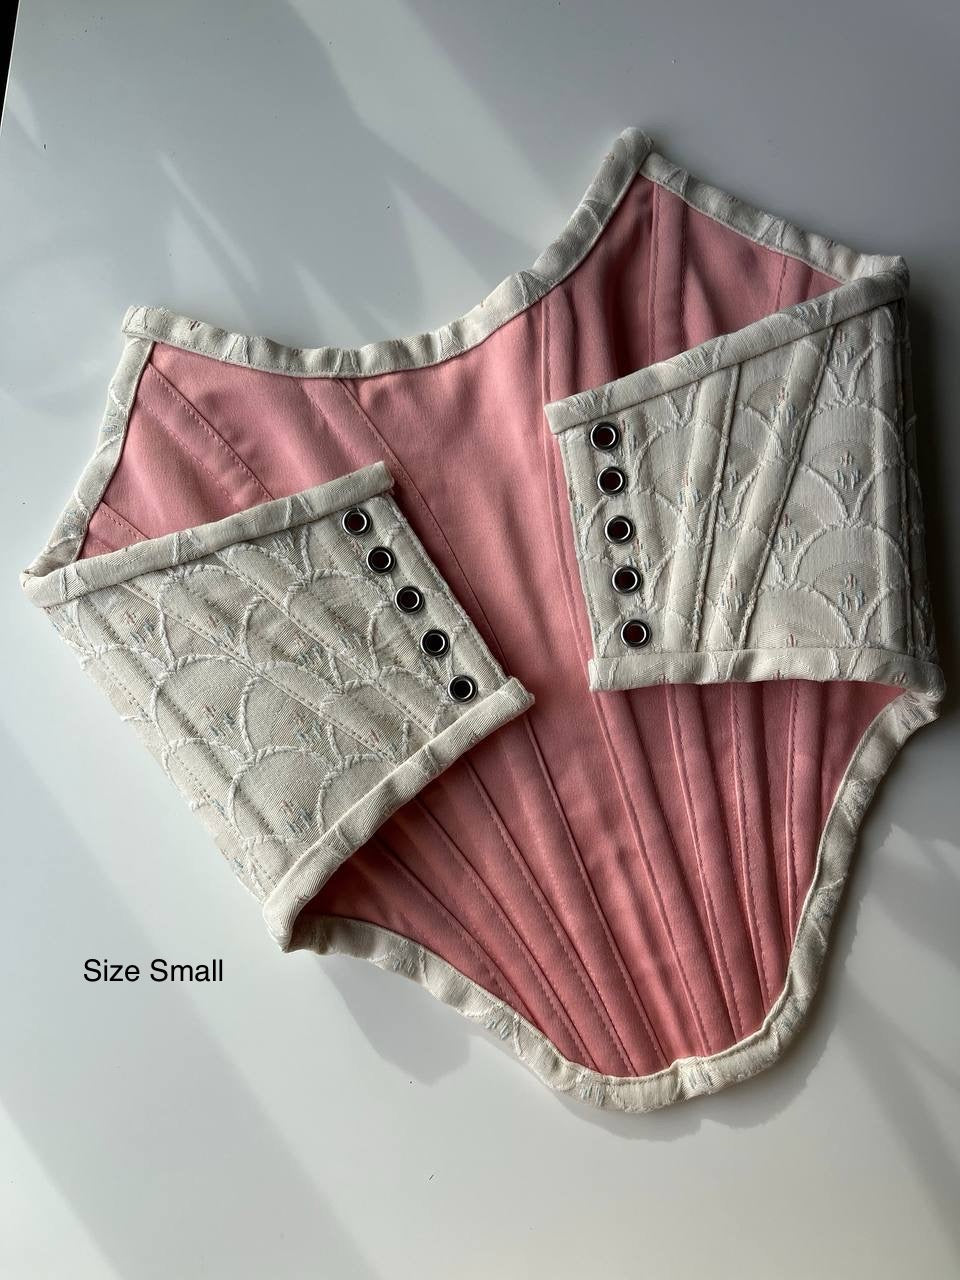 corset “Mermaid” size S